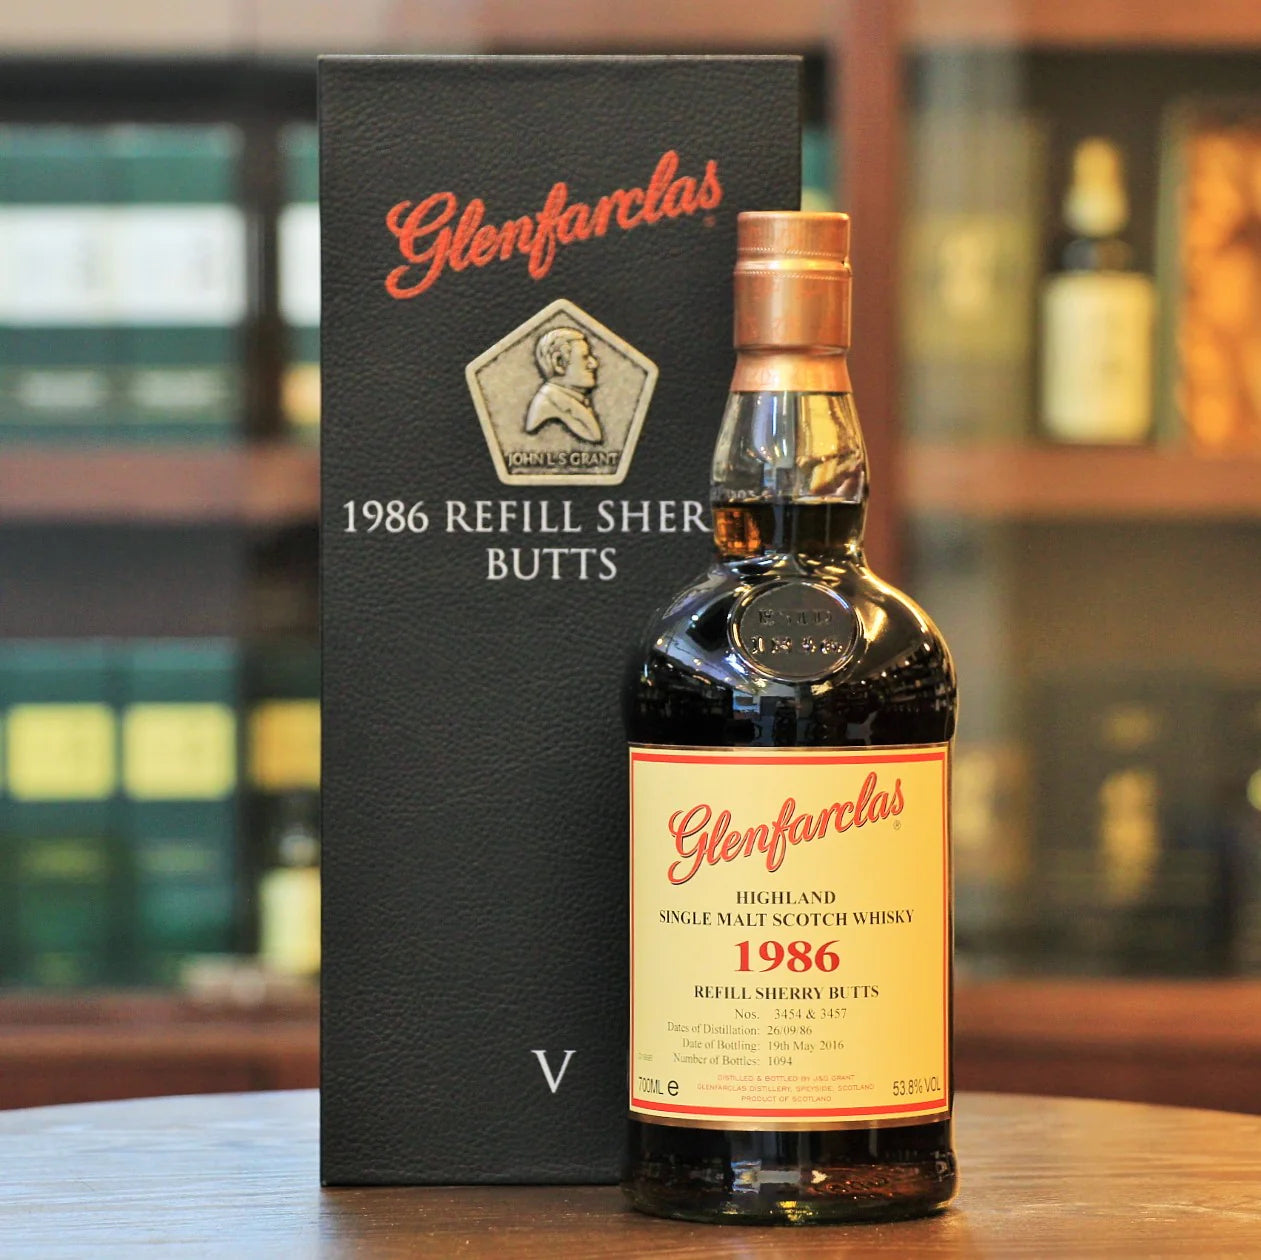 Glenfarclas 1986 Refill Sherry Butts V Single Malt Scotch Whisky (70cl; 53.8%)